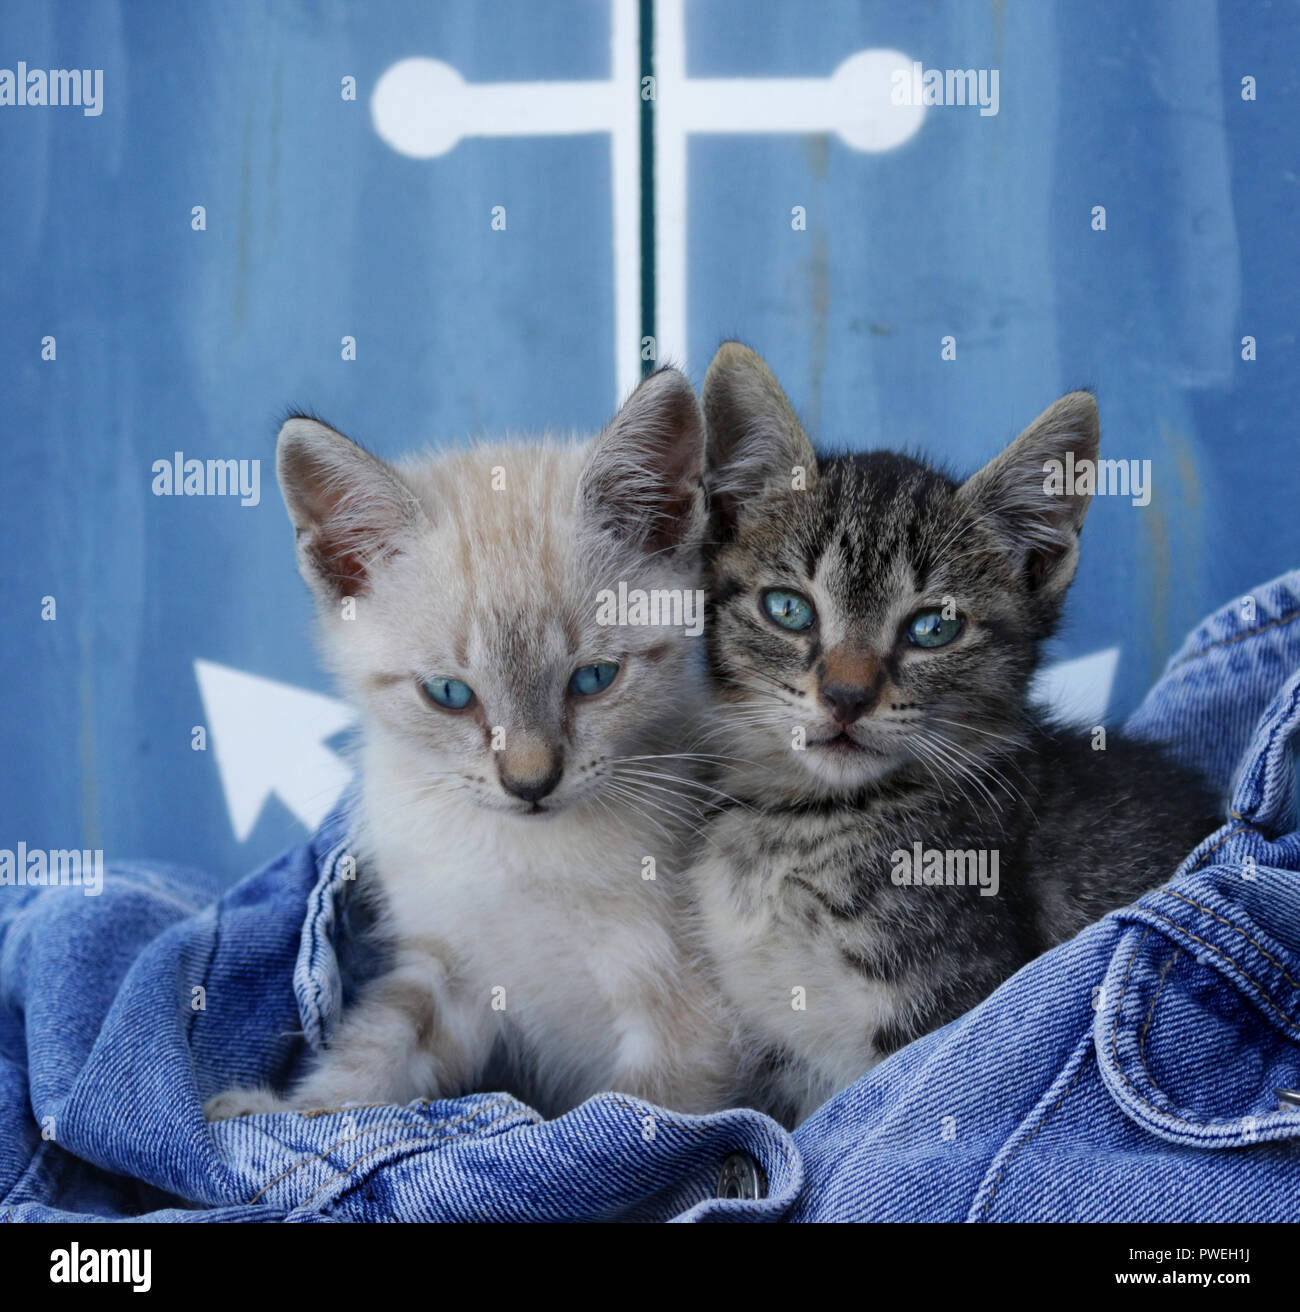 Deux chatons, 7 semaines, seal point tabby et tabby noir, assis ensemble dans un jeans Banque D'Images